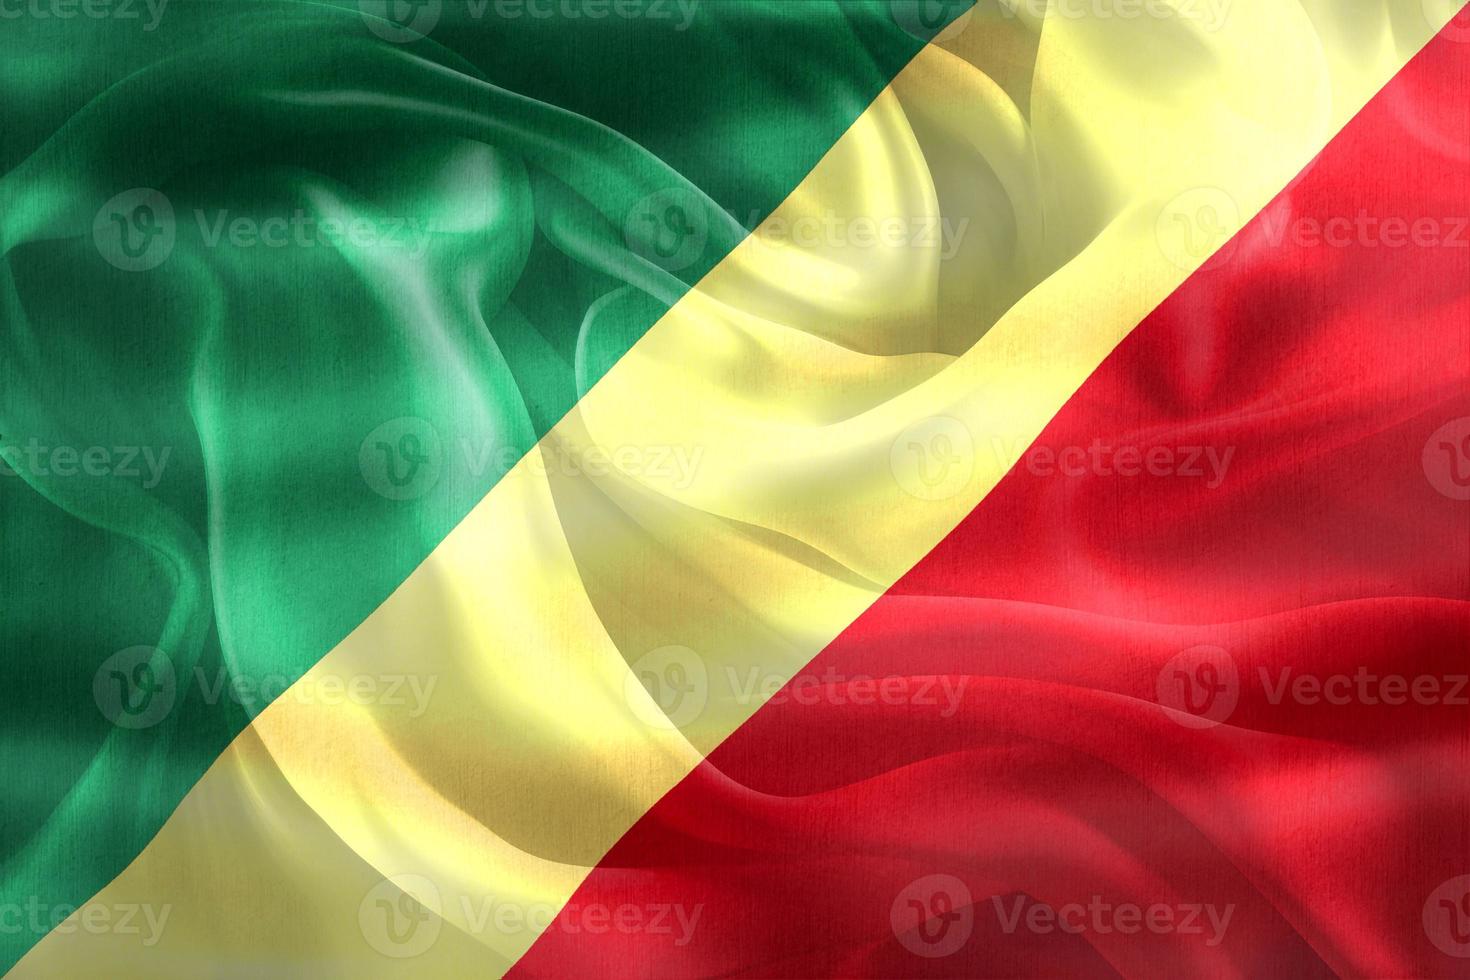 drapeau de la république du congo - drapeau en tissu ondulant réaliste photo